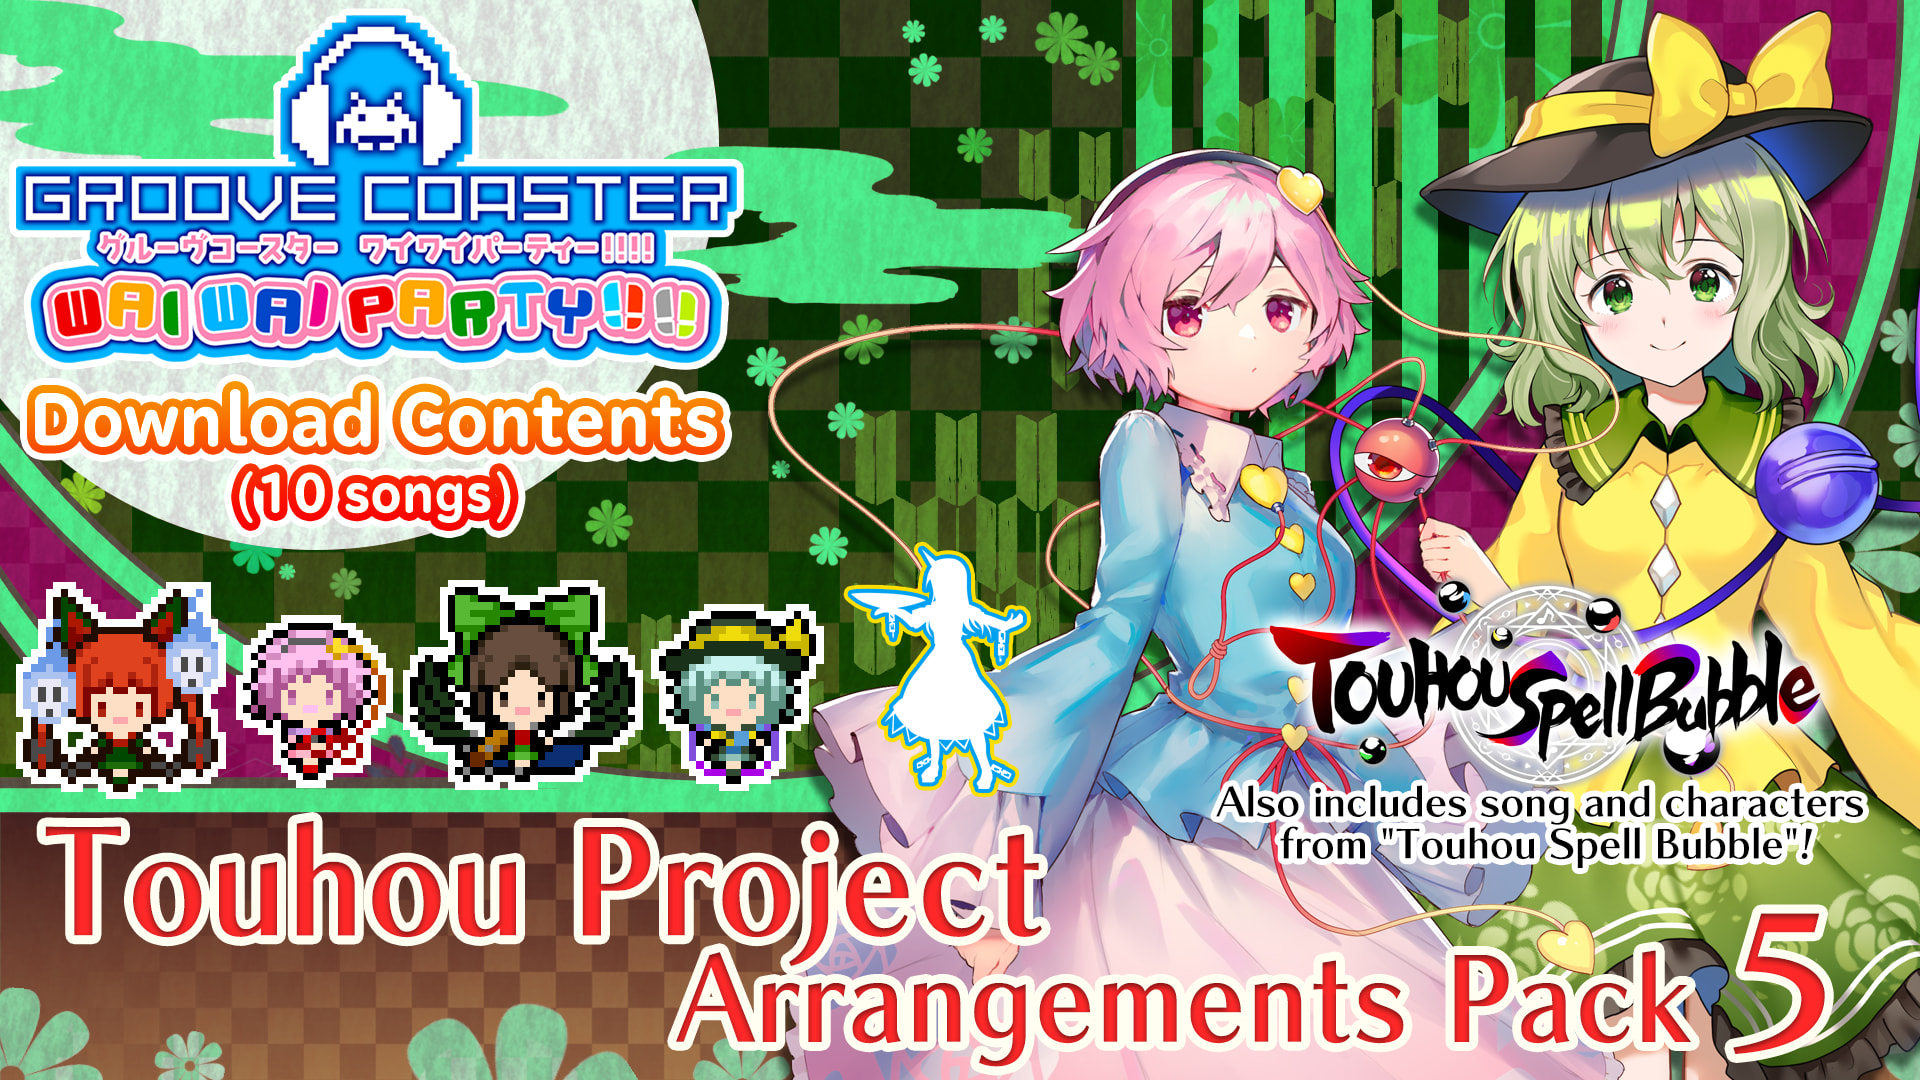 Touhou Project Arrangements Pack 5